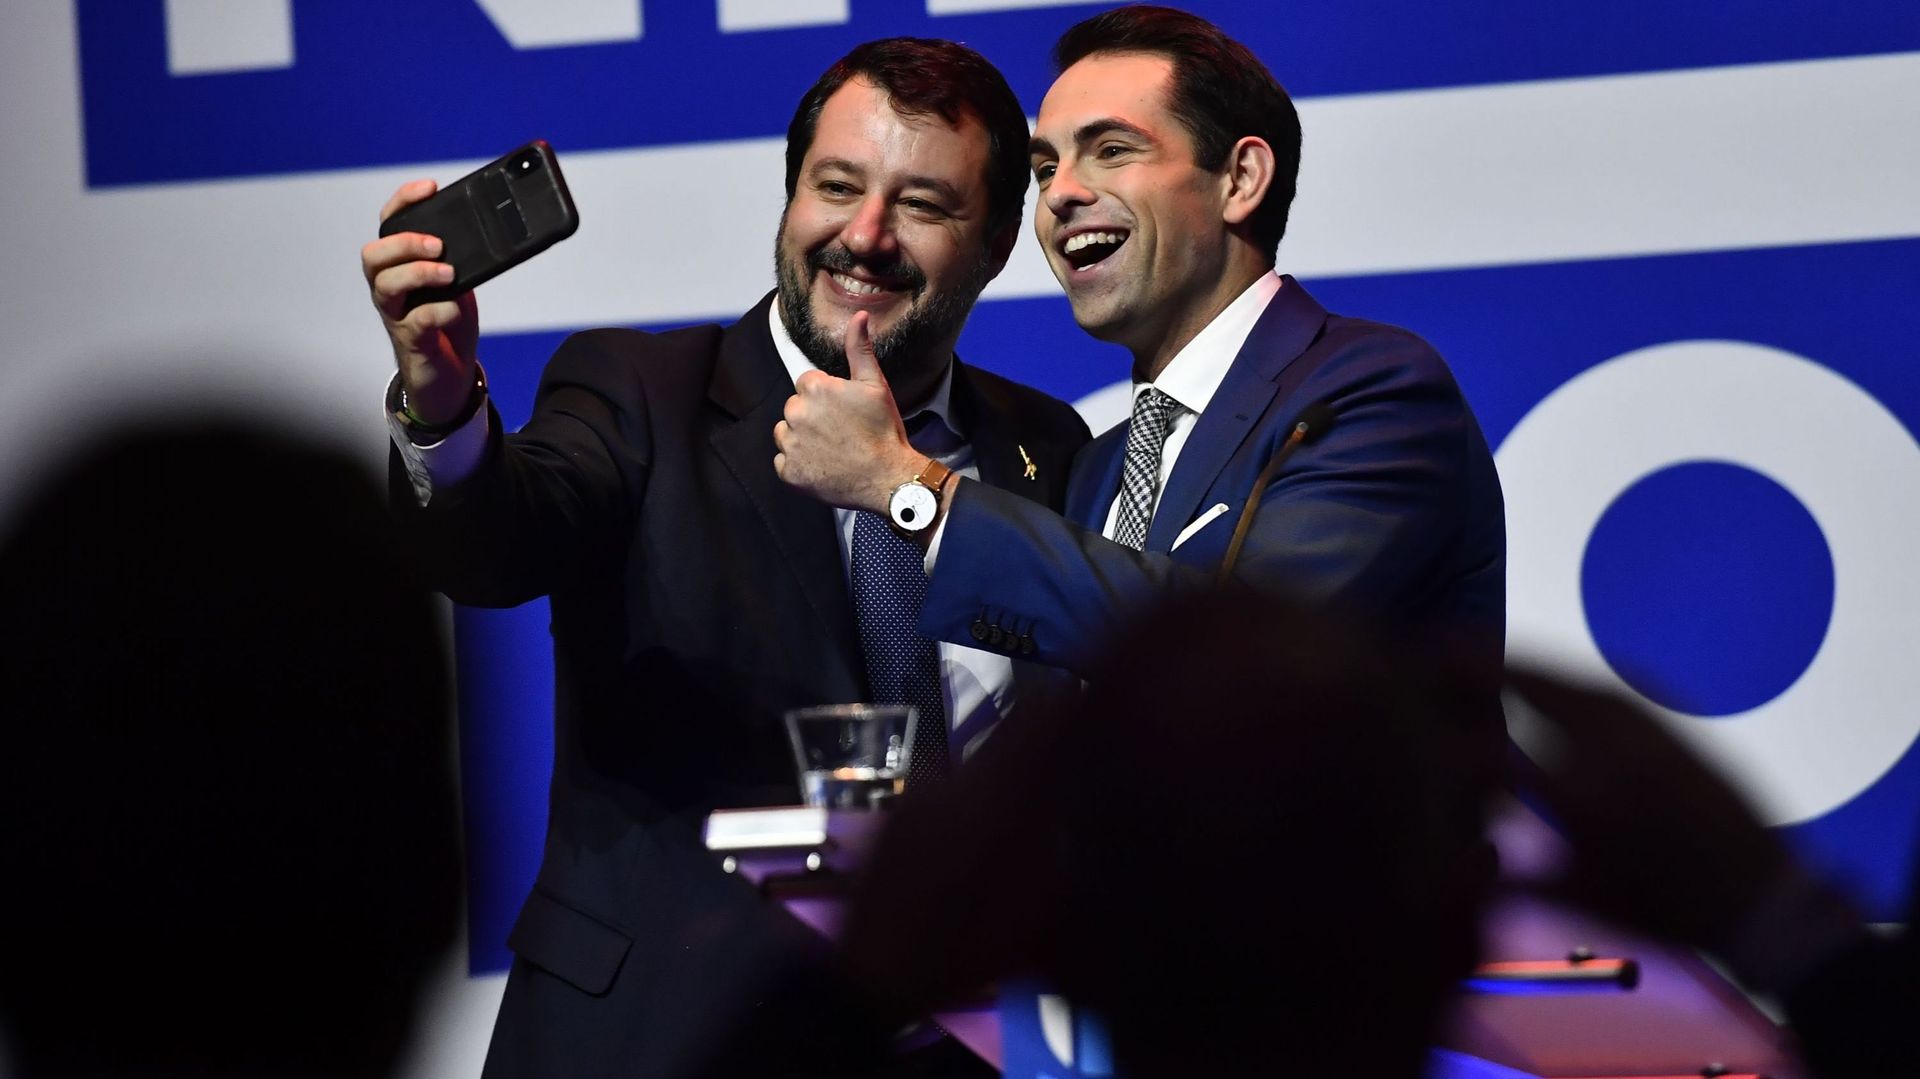 Vlaams Belang, Salvini, Trump, Johnson: La vague "nationale-populiste" est-elle inarrêtable ? 